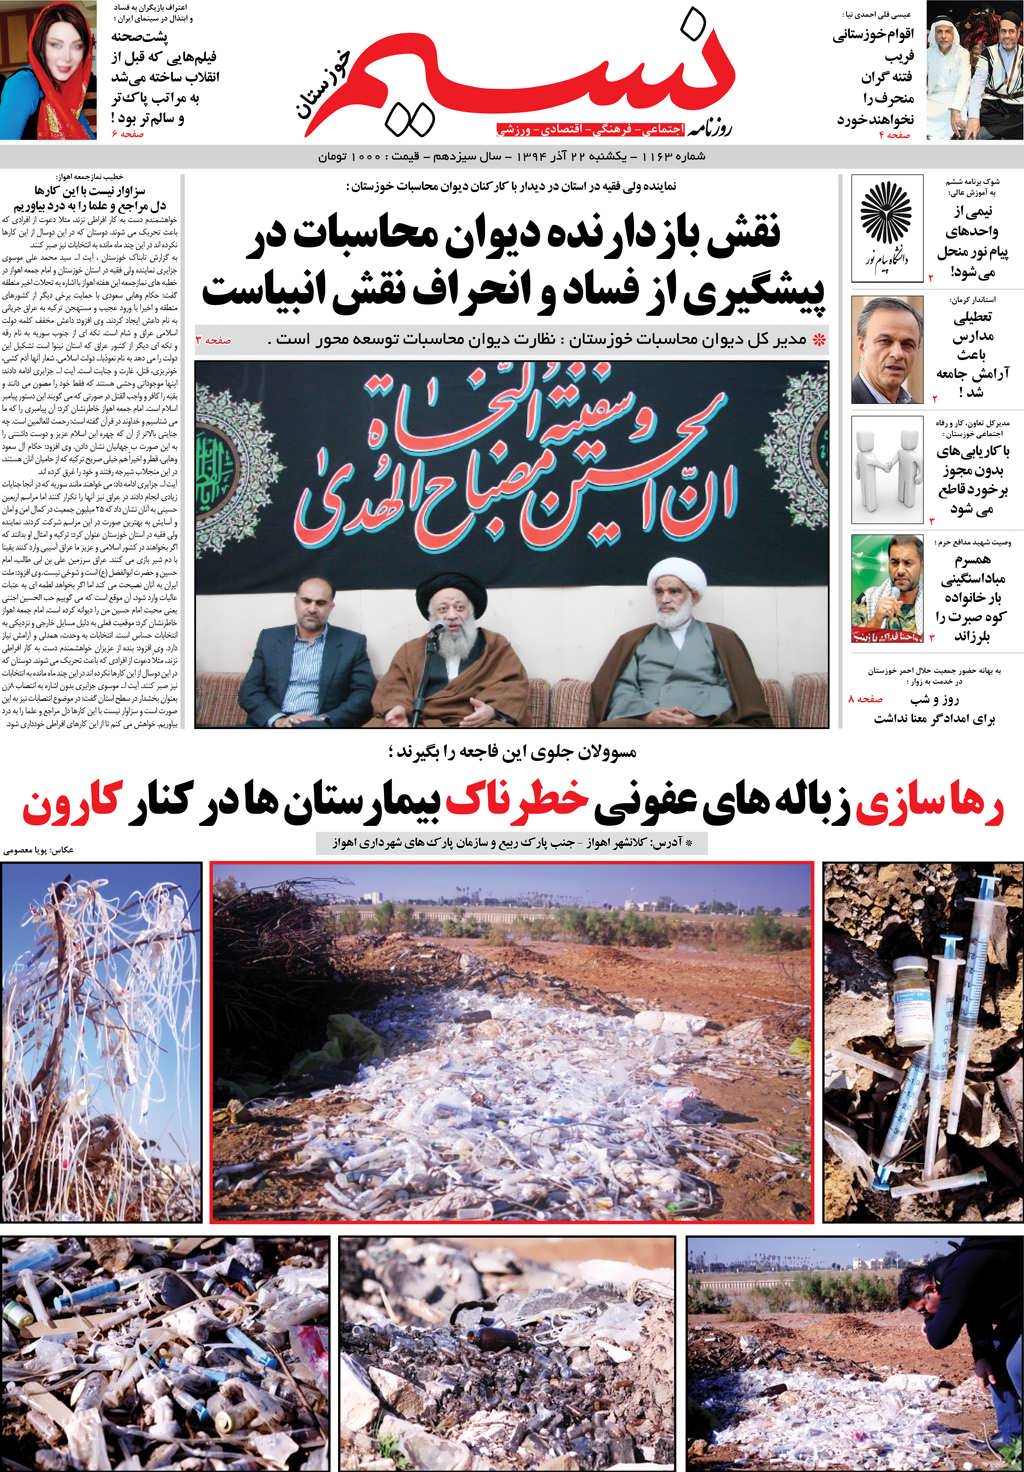 صفحه اصلی روزنامه نسیم شماره 1163